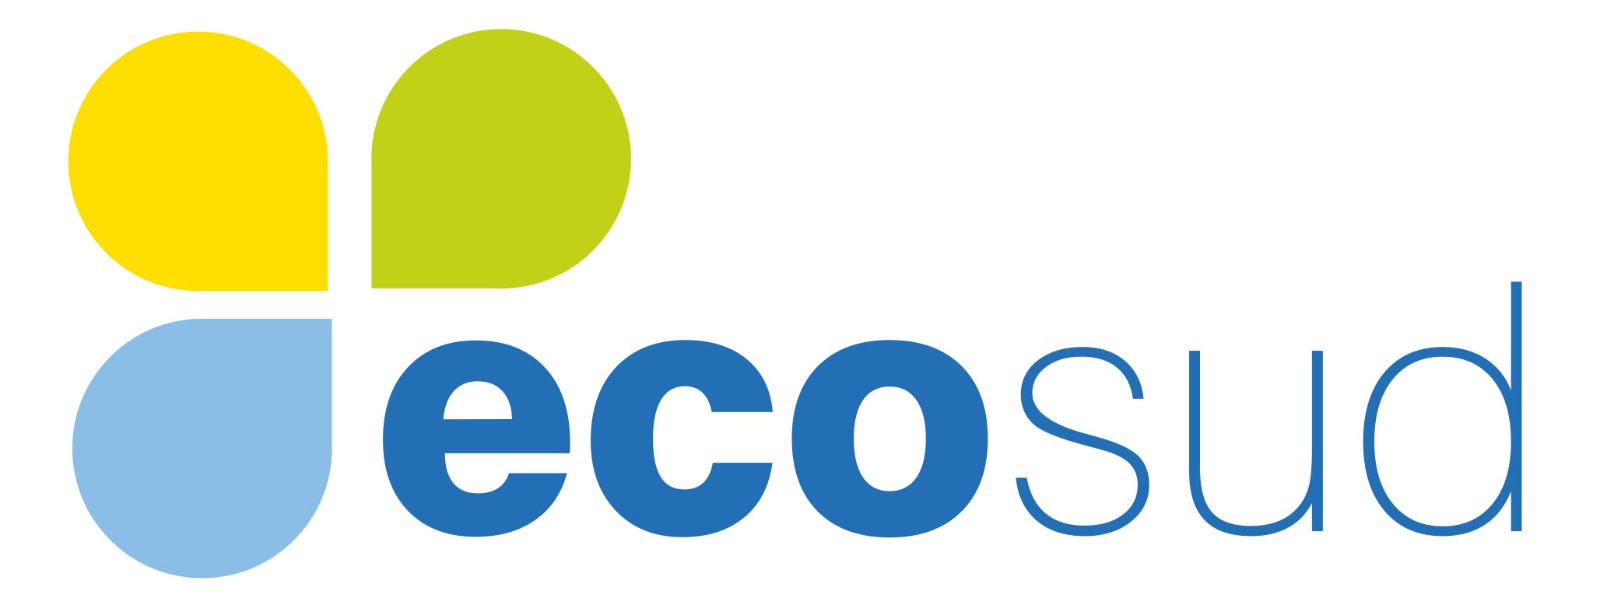 Compania Eco Sud clarifică unele confuzii privind autorizațiile și licențele deținute care au apărut eronat în spațiul public